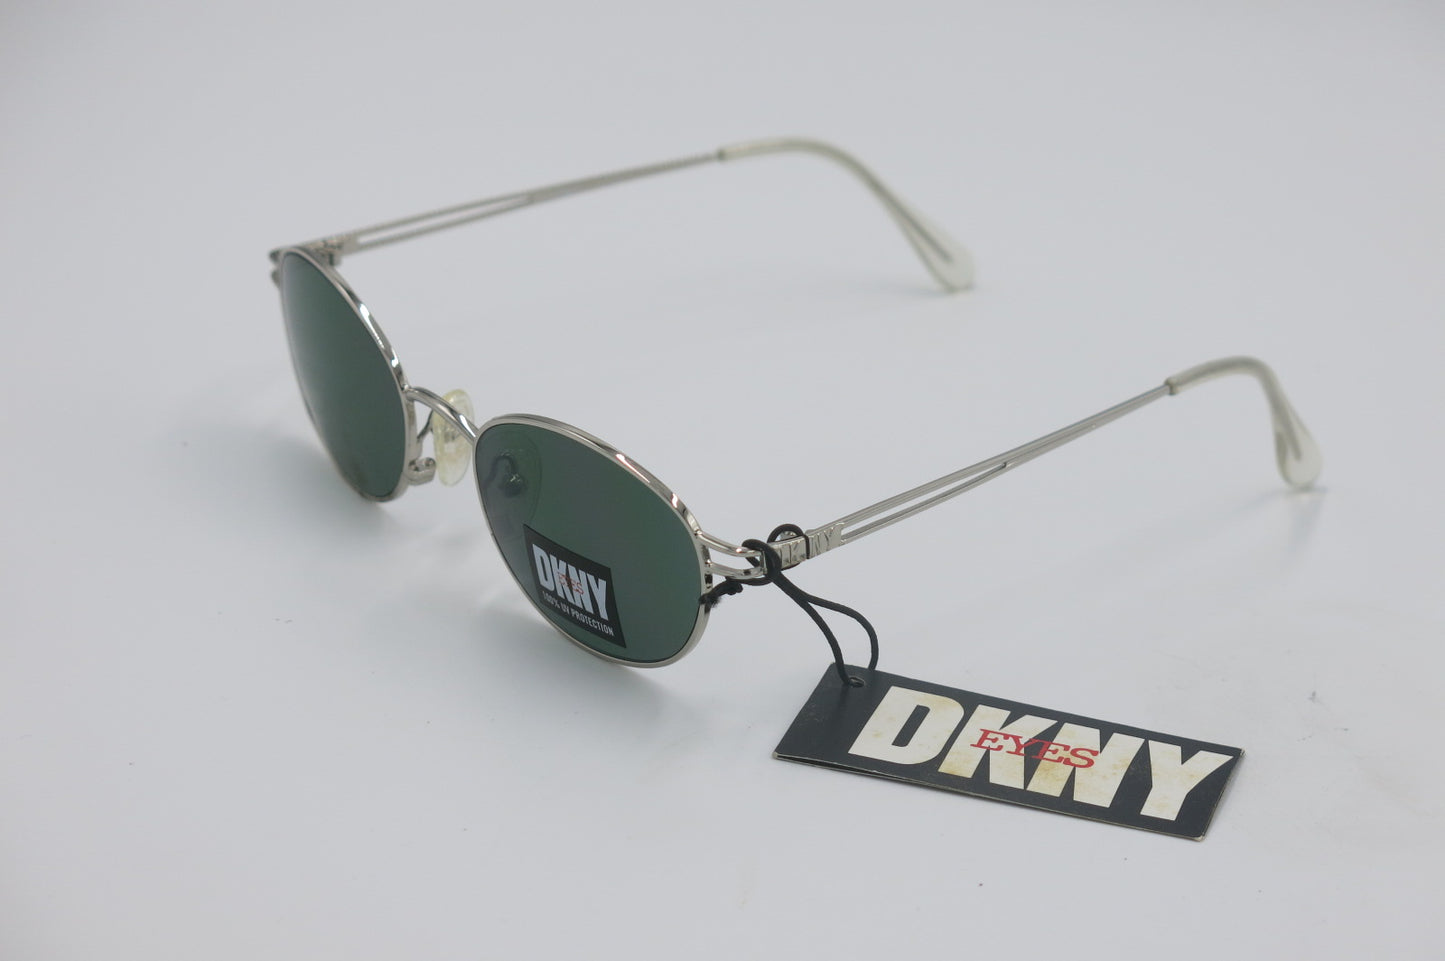 DKNY K 01032 Sunglasses